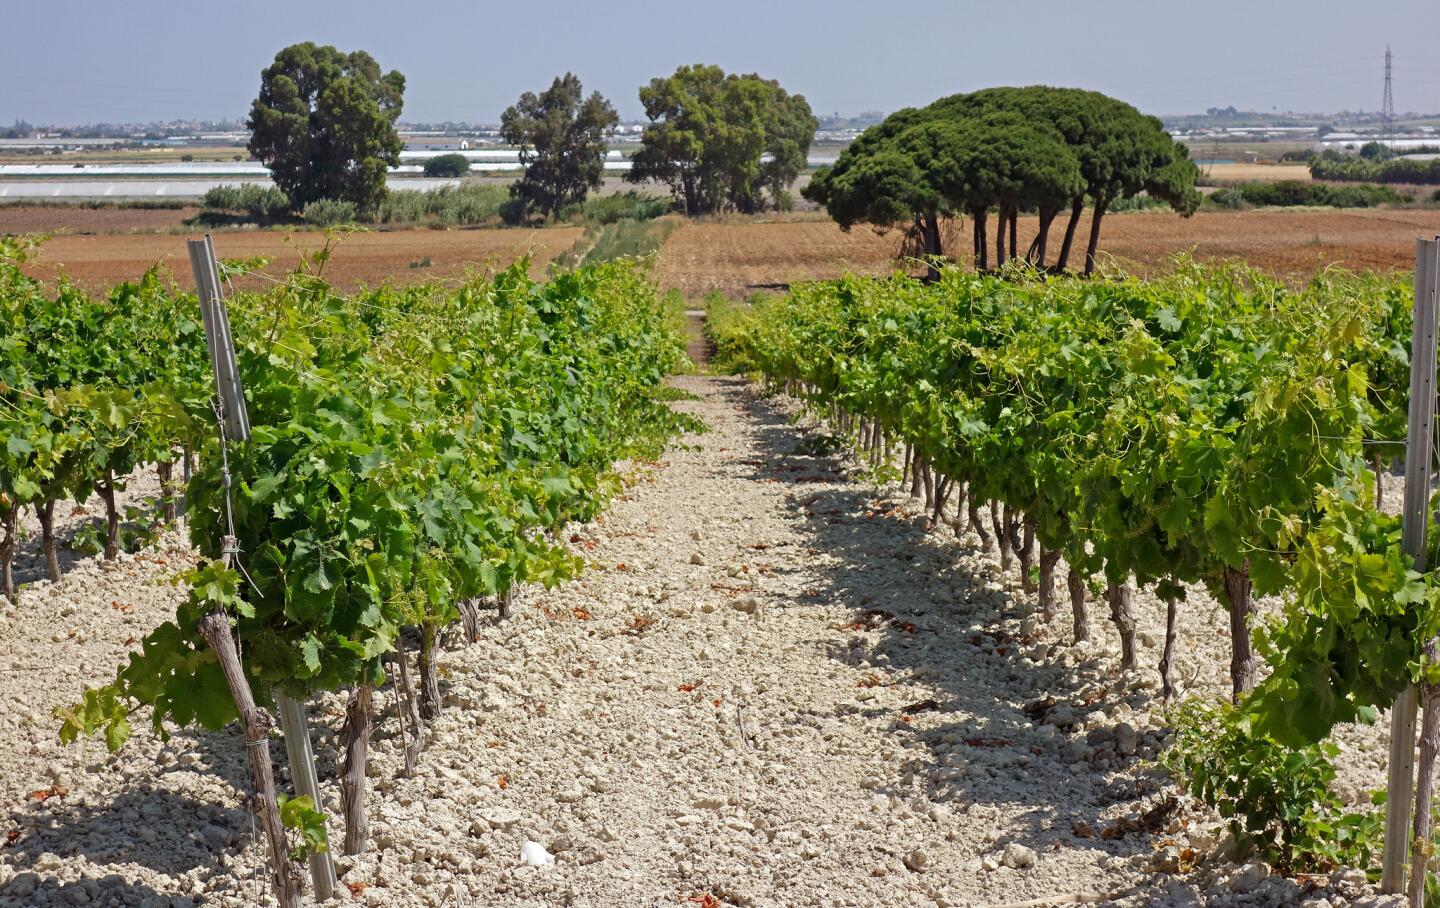 Vineyards in southern Spain